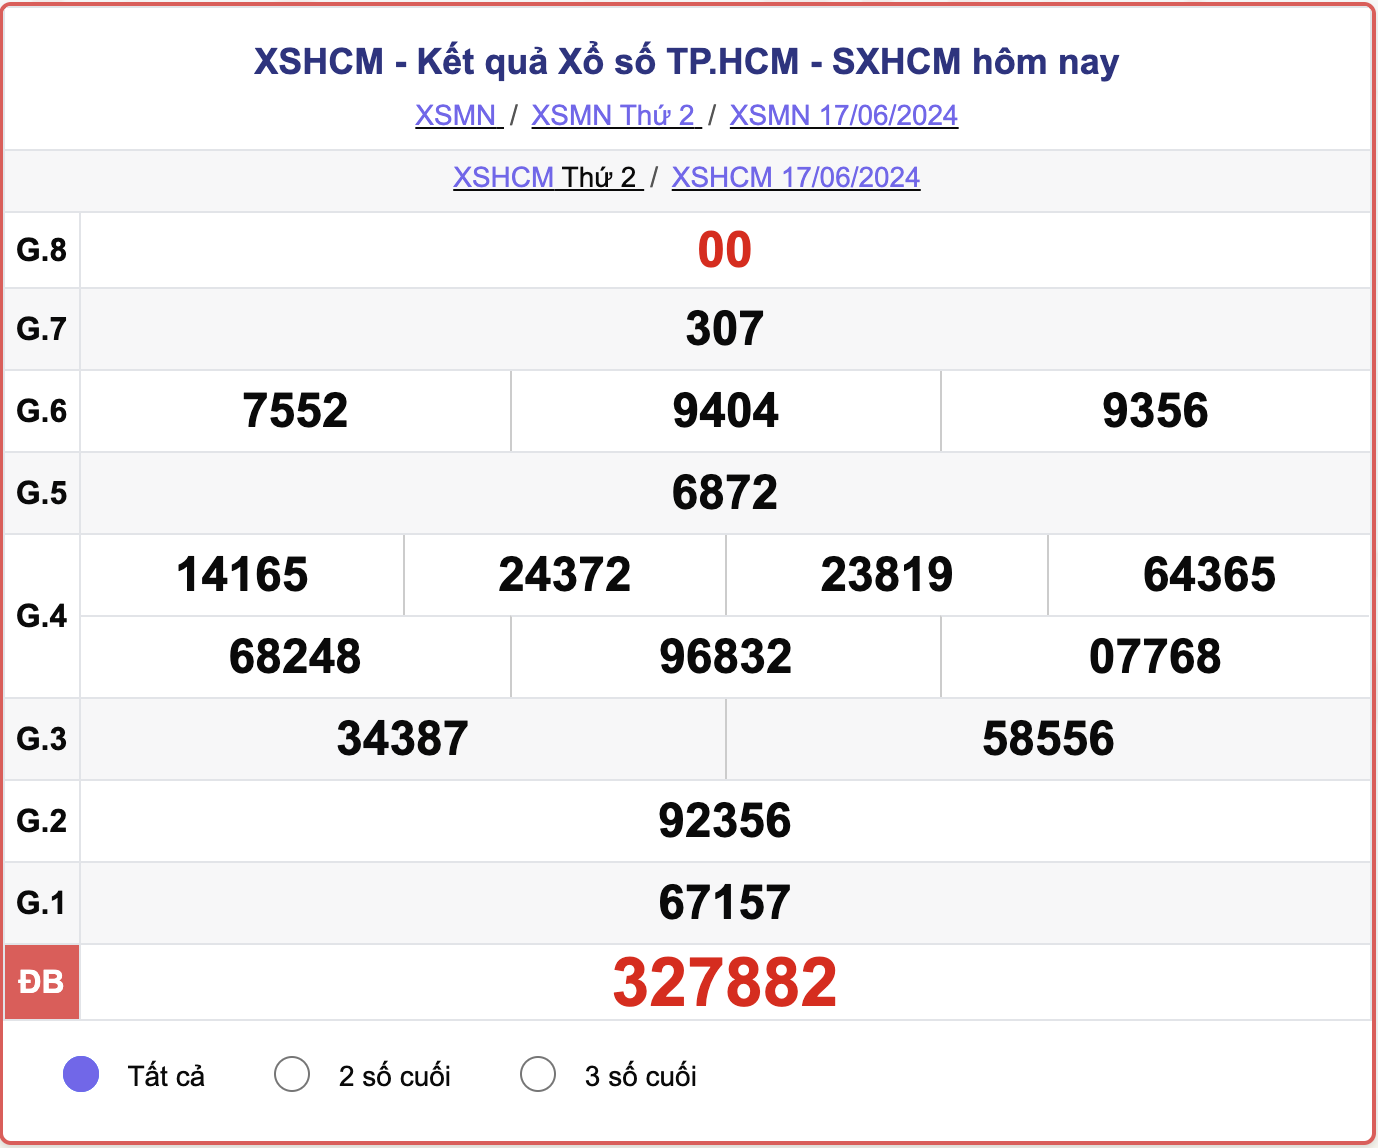 XSHCM 17/6, kết quả xổ số TP.HCM hôm nay 17/6/2024.